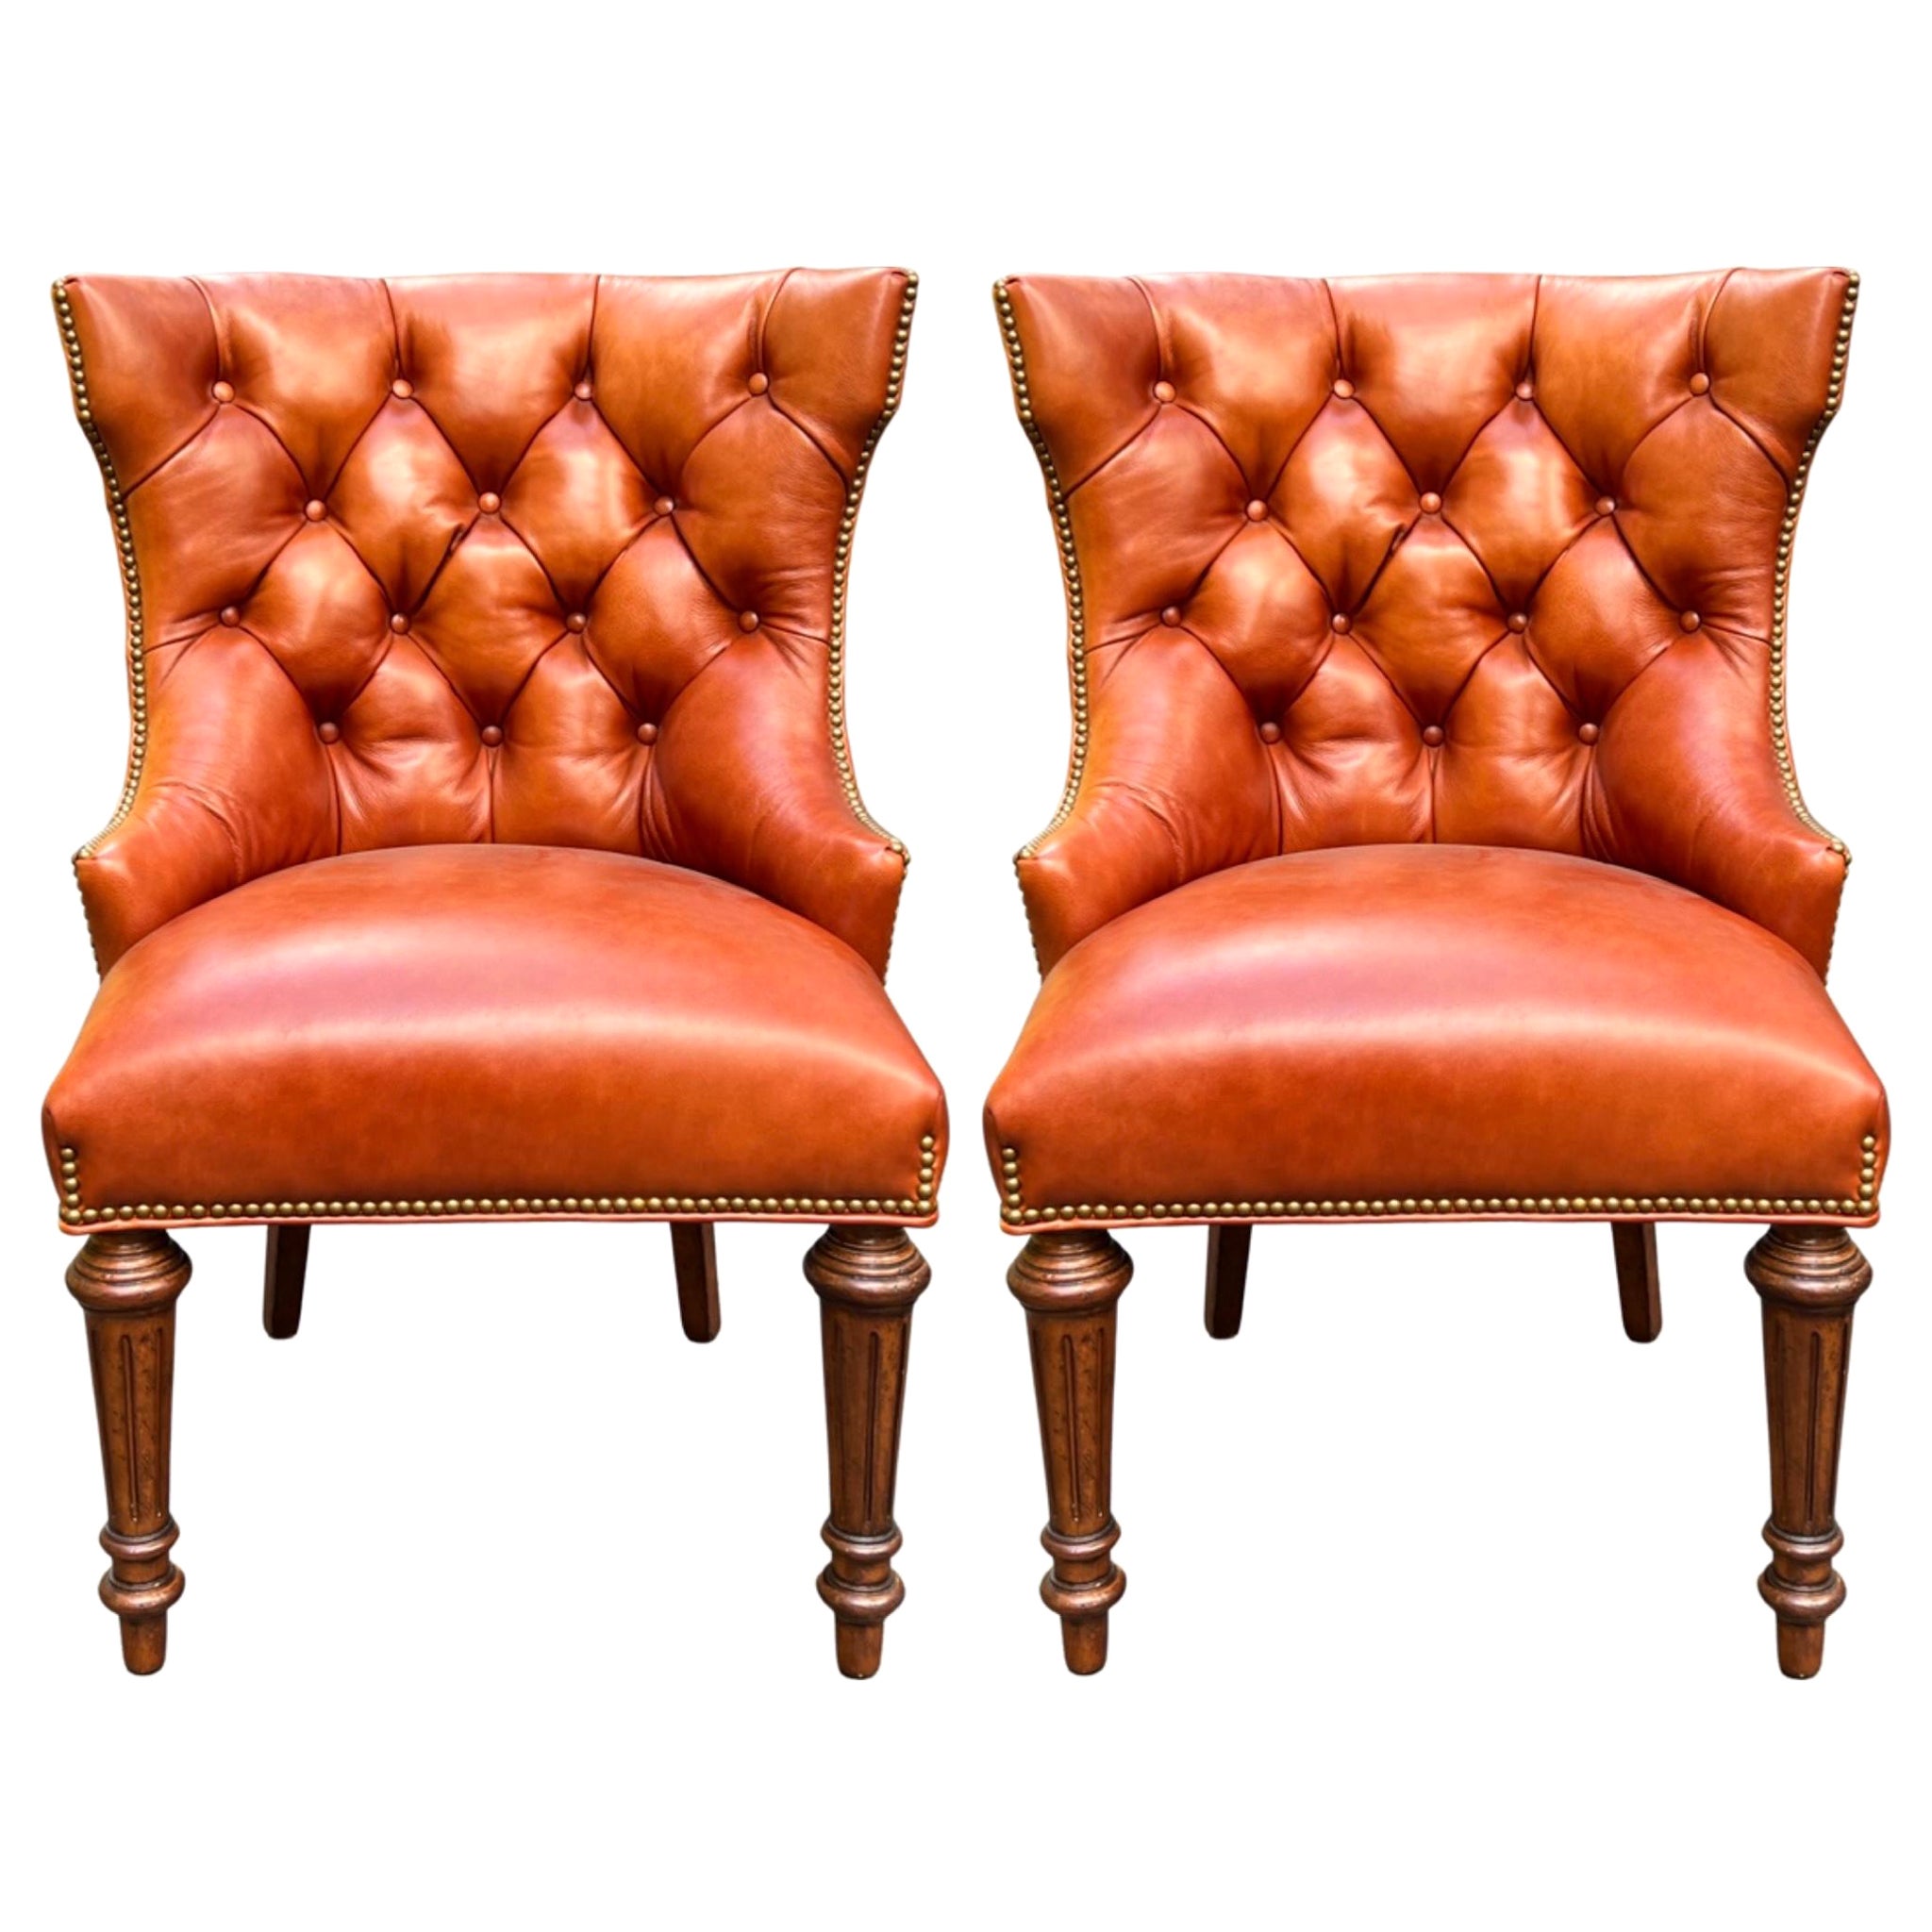 Fin du 20e siècle. Paire de chaises en cuir de style Chesterfield attribuées à Hancock et Moore